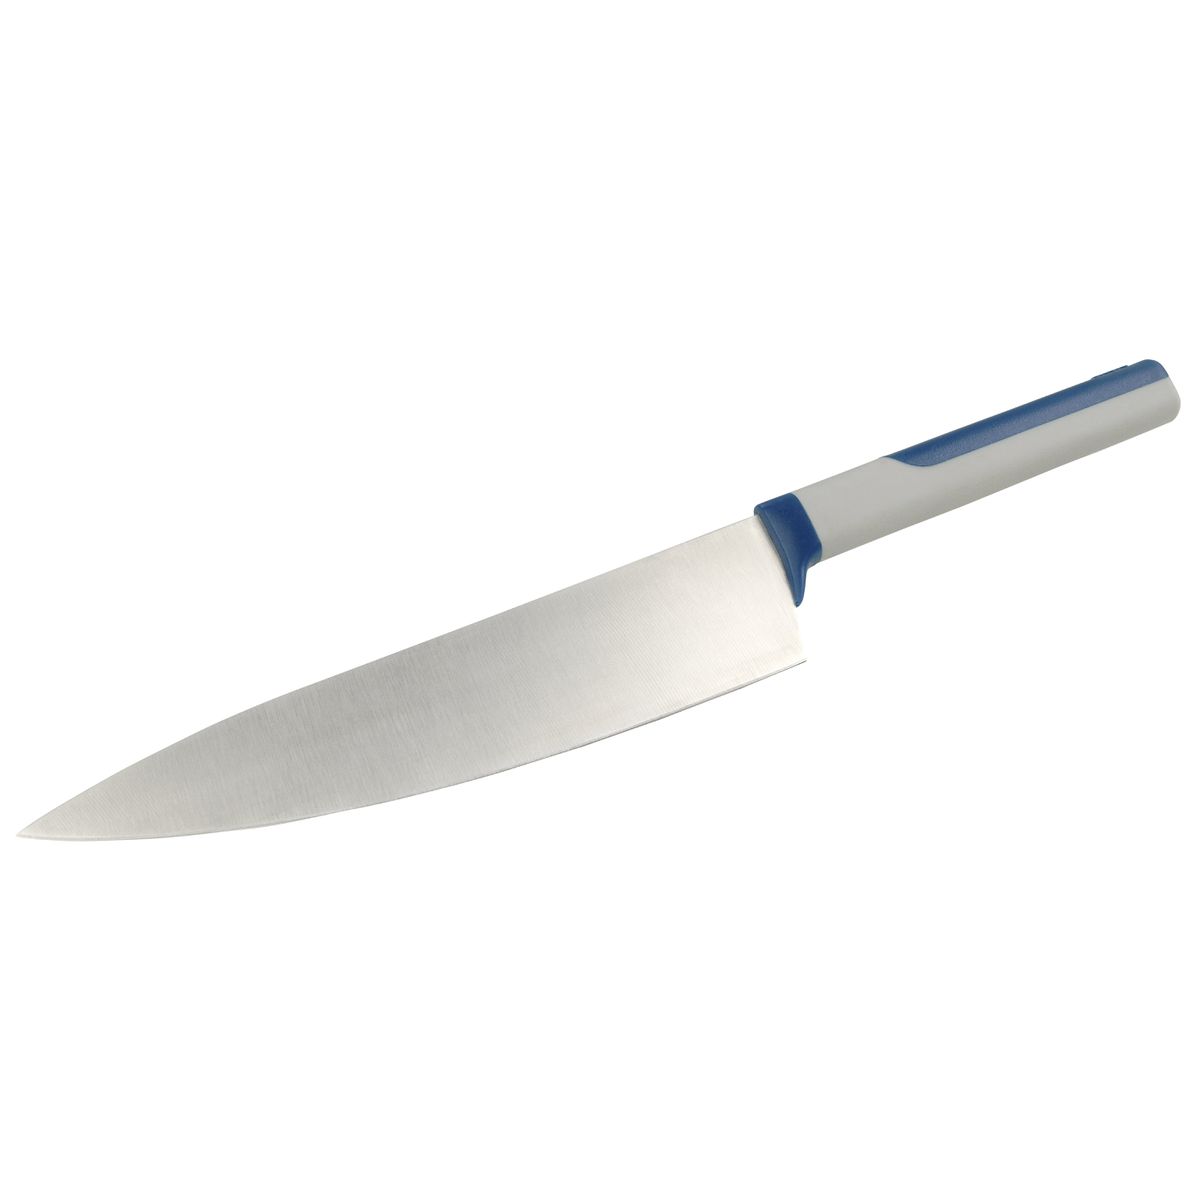 Grand couteau du chef 33,5 cm Tasty Core